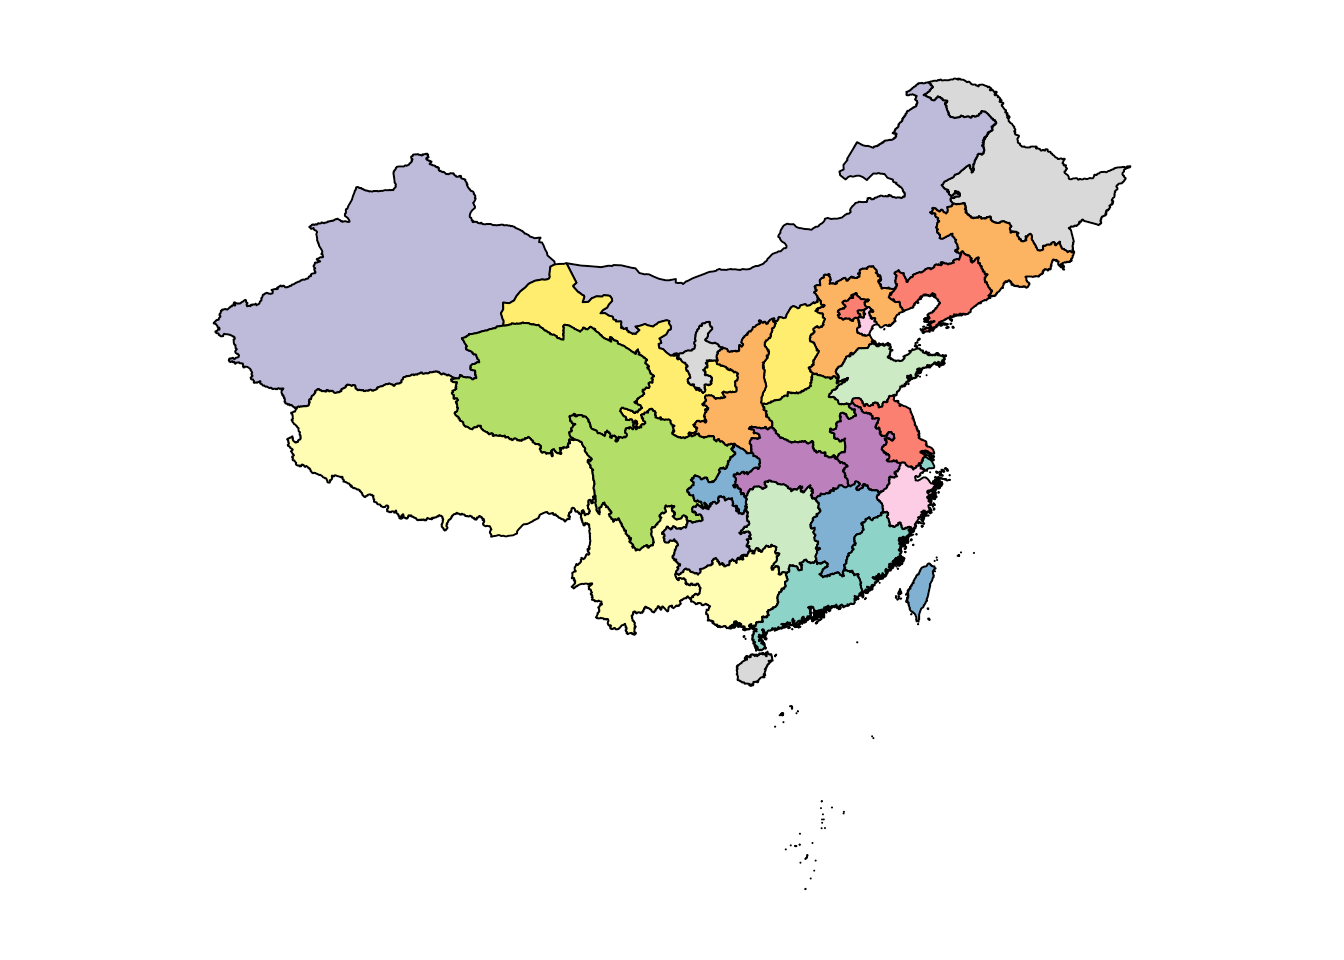 2009年统计之都提供的中国地图数据